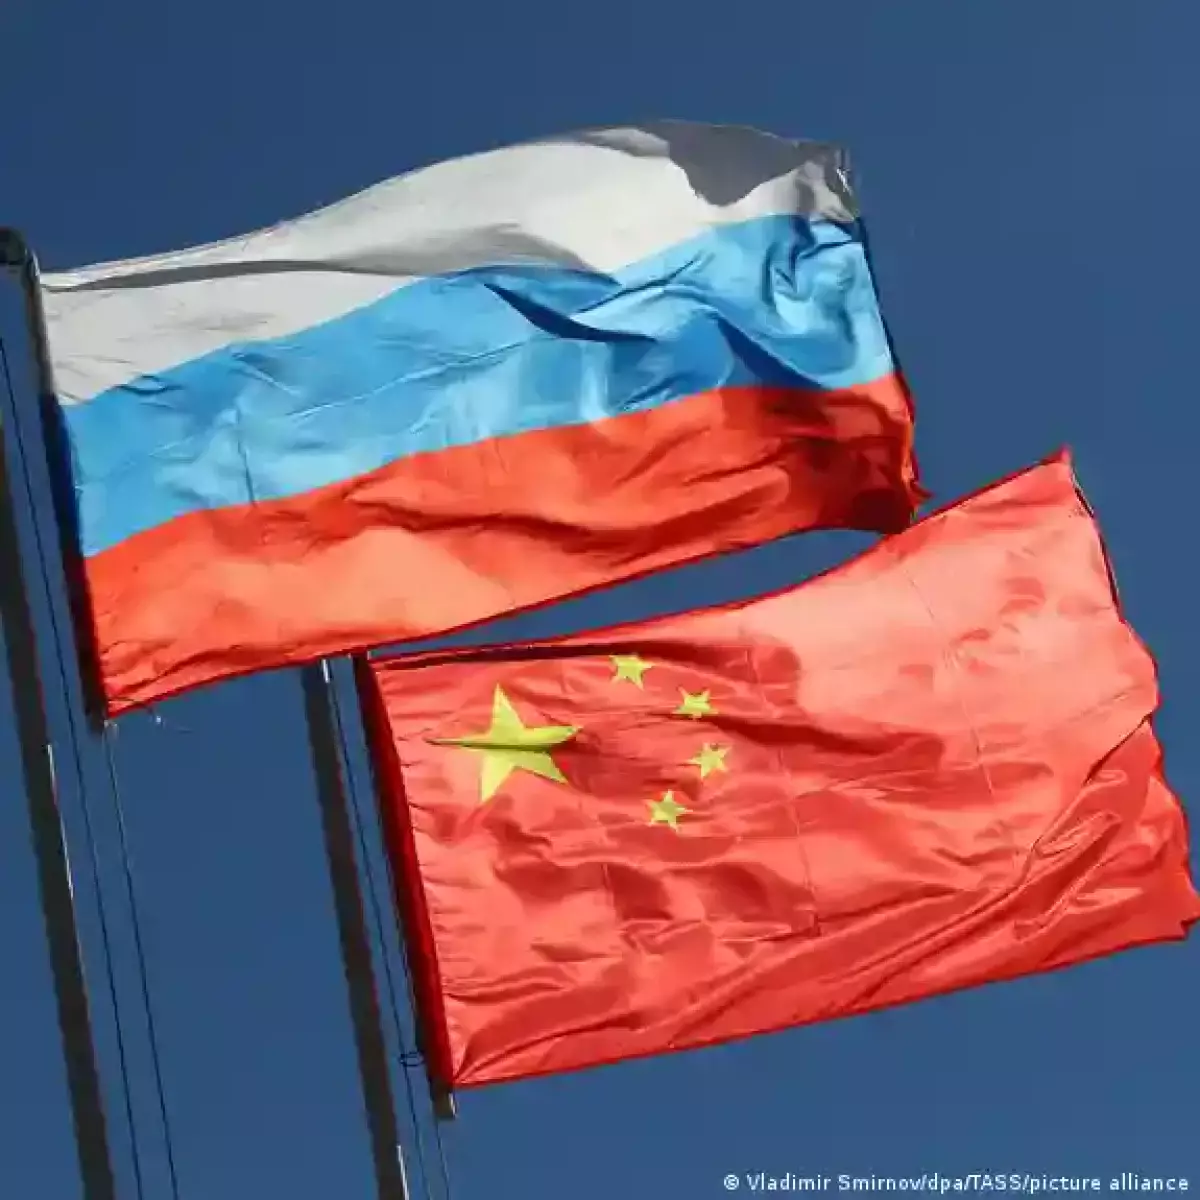 Лондон обвинил Китай в поставках в РФ летального оружия